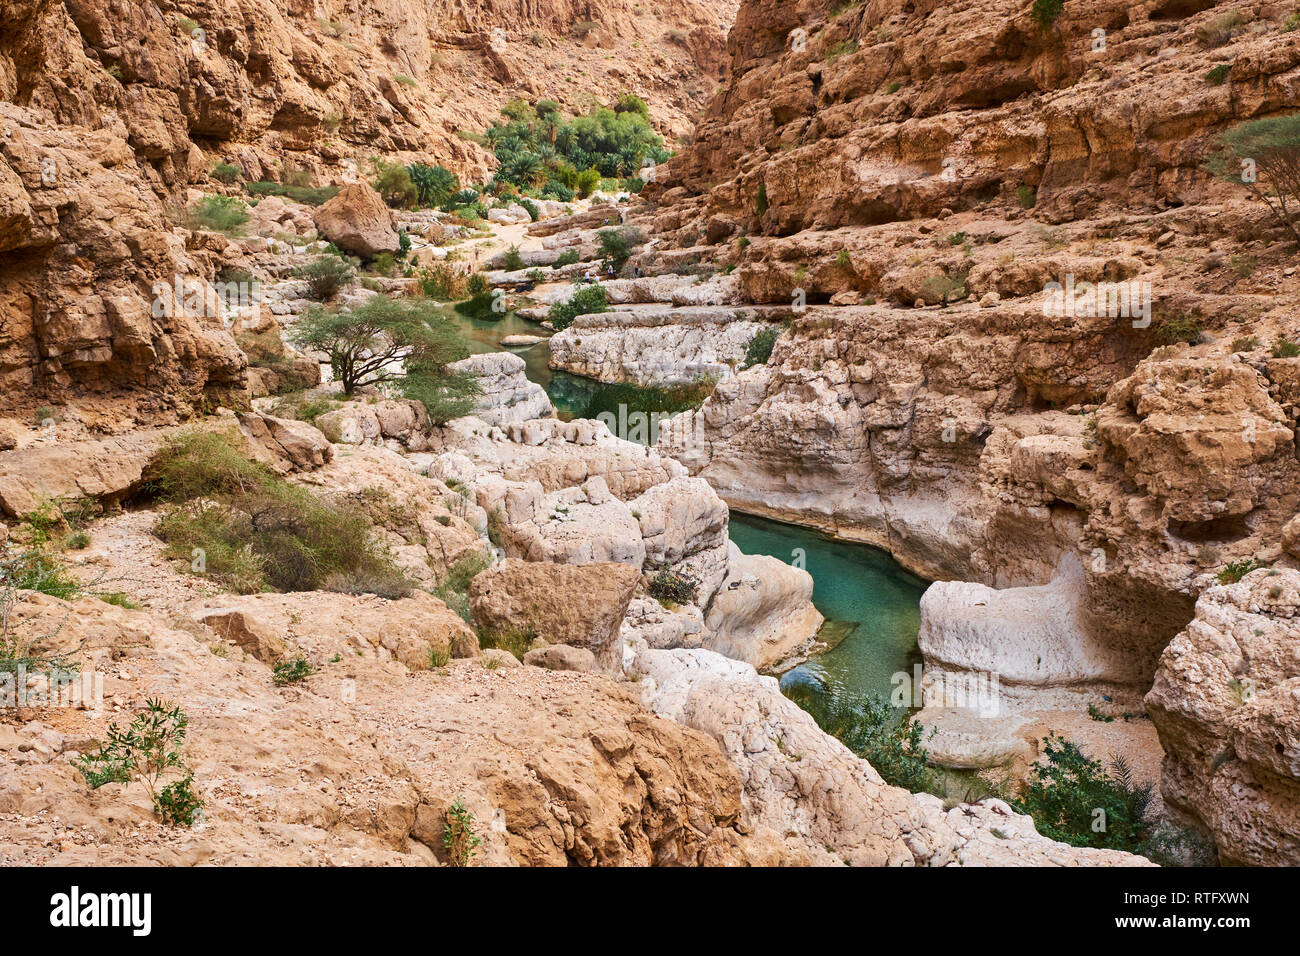 Sultanat of Oman, governorate of Ash Sharqiyah, Wadi ash Shab Stock Photo